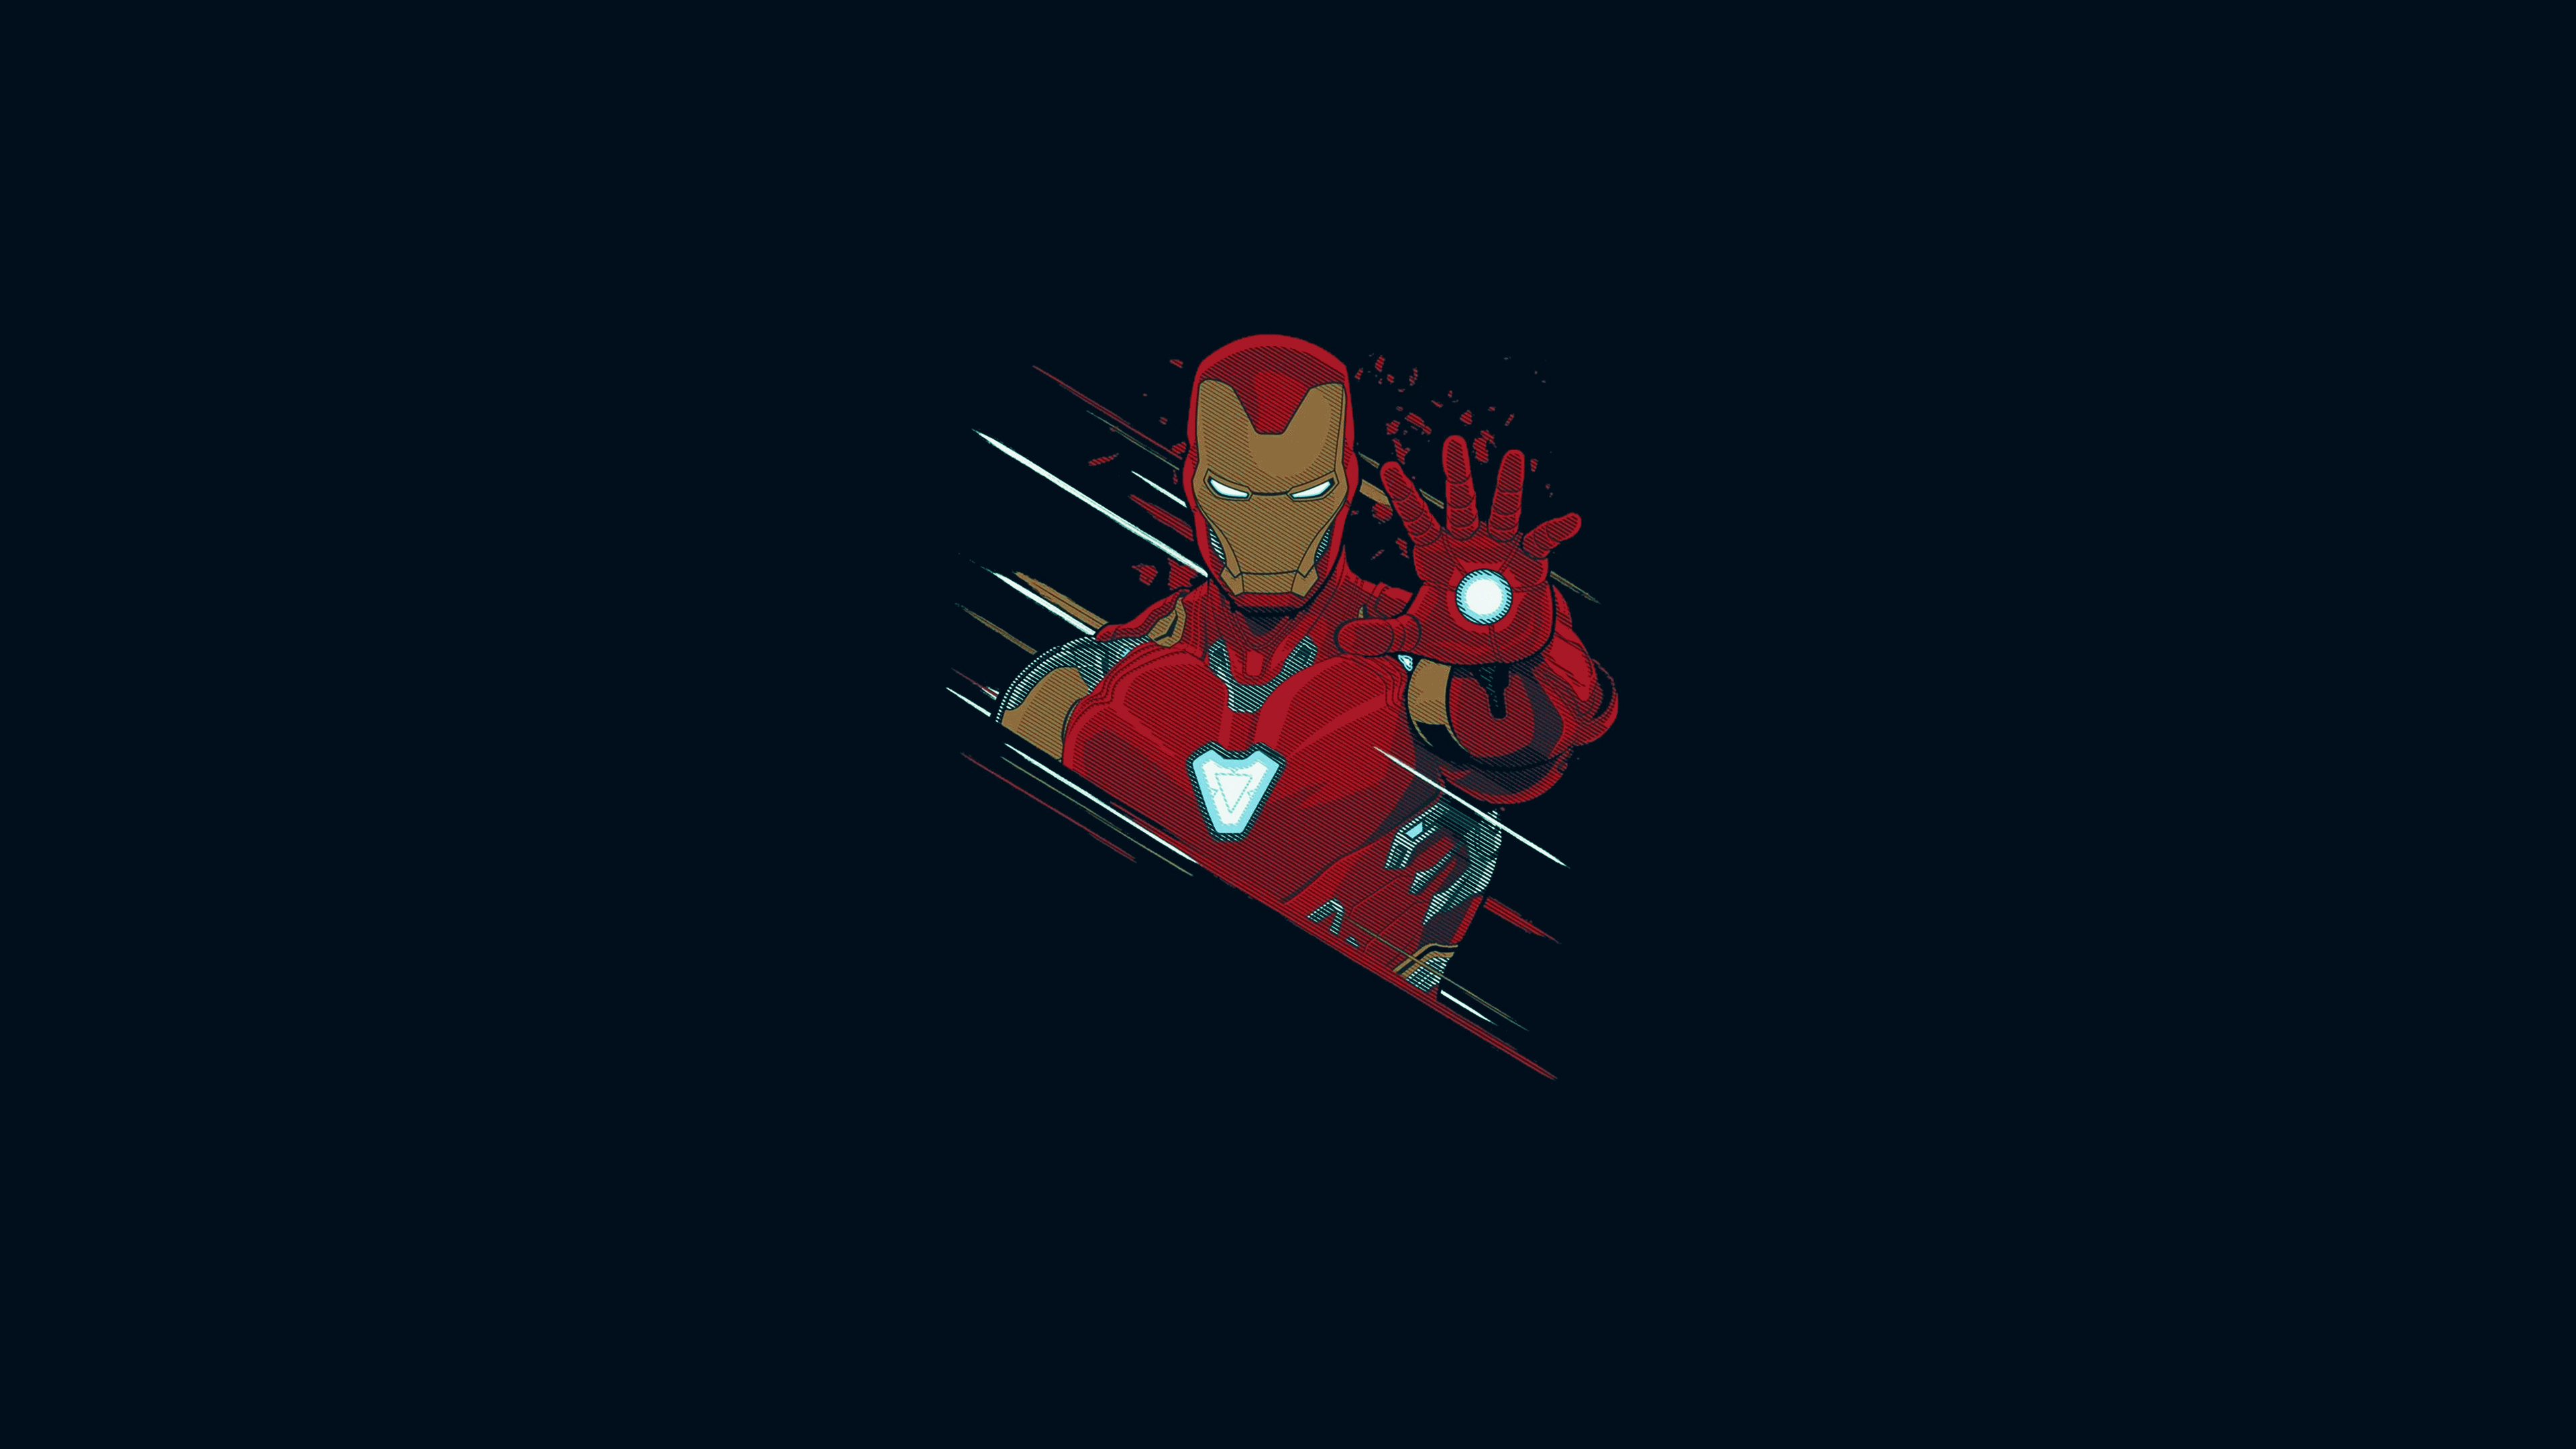 Iron-Man-glowing- Live -Wallpaper by linkvegas12 on DeviantArt